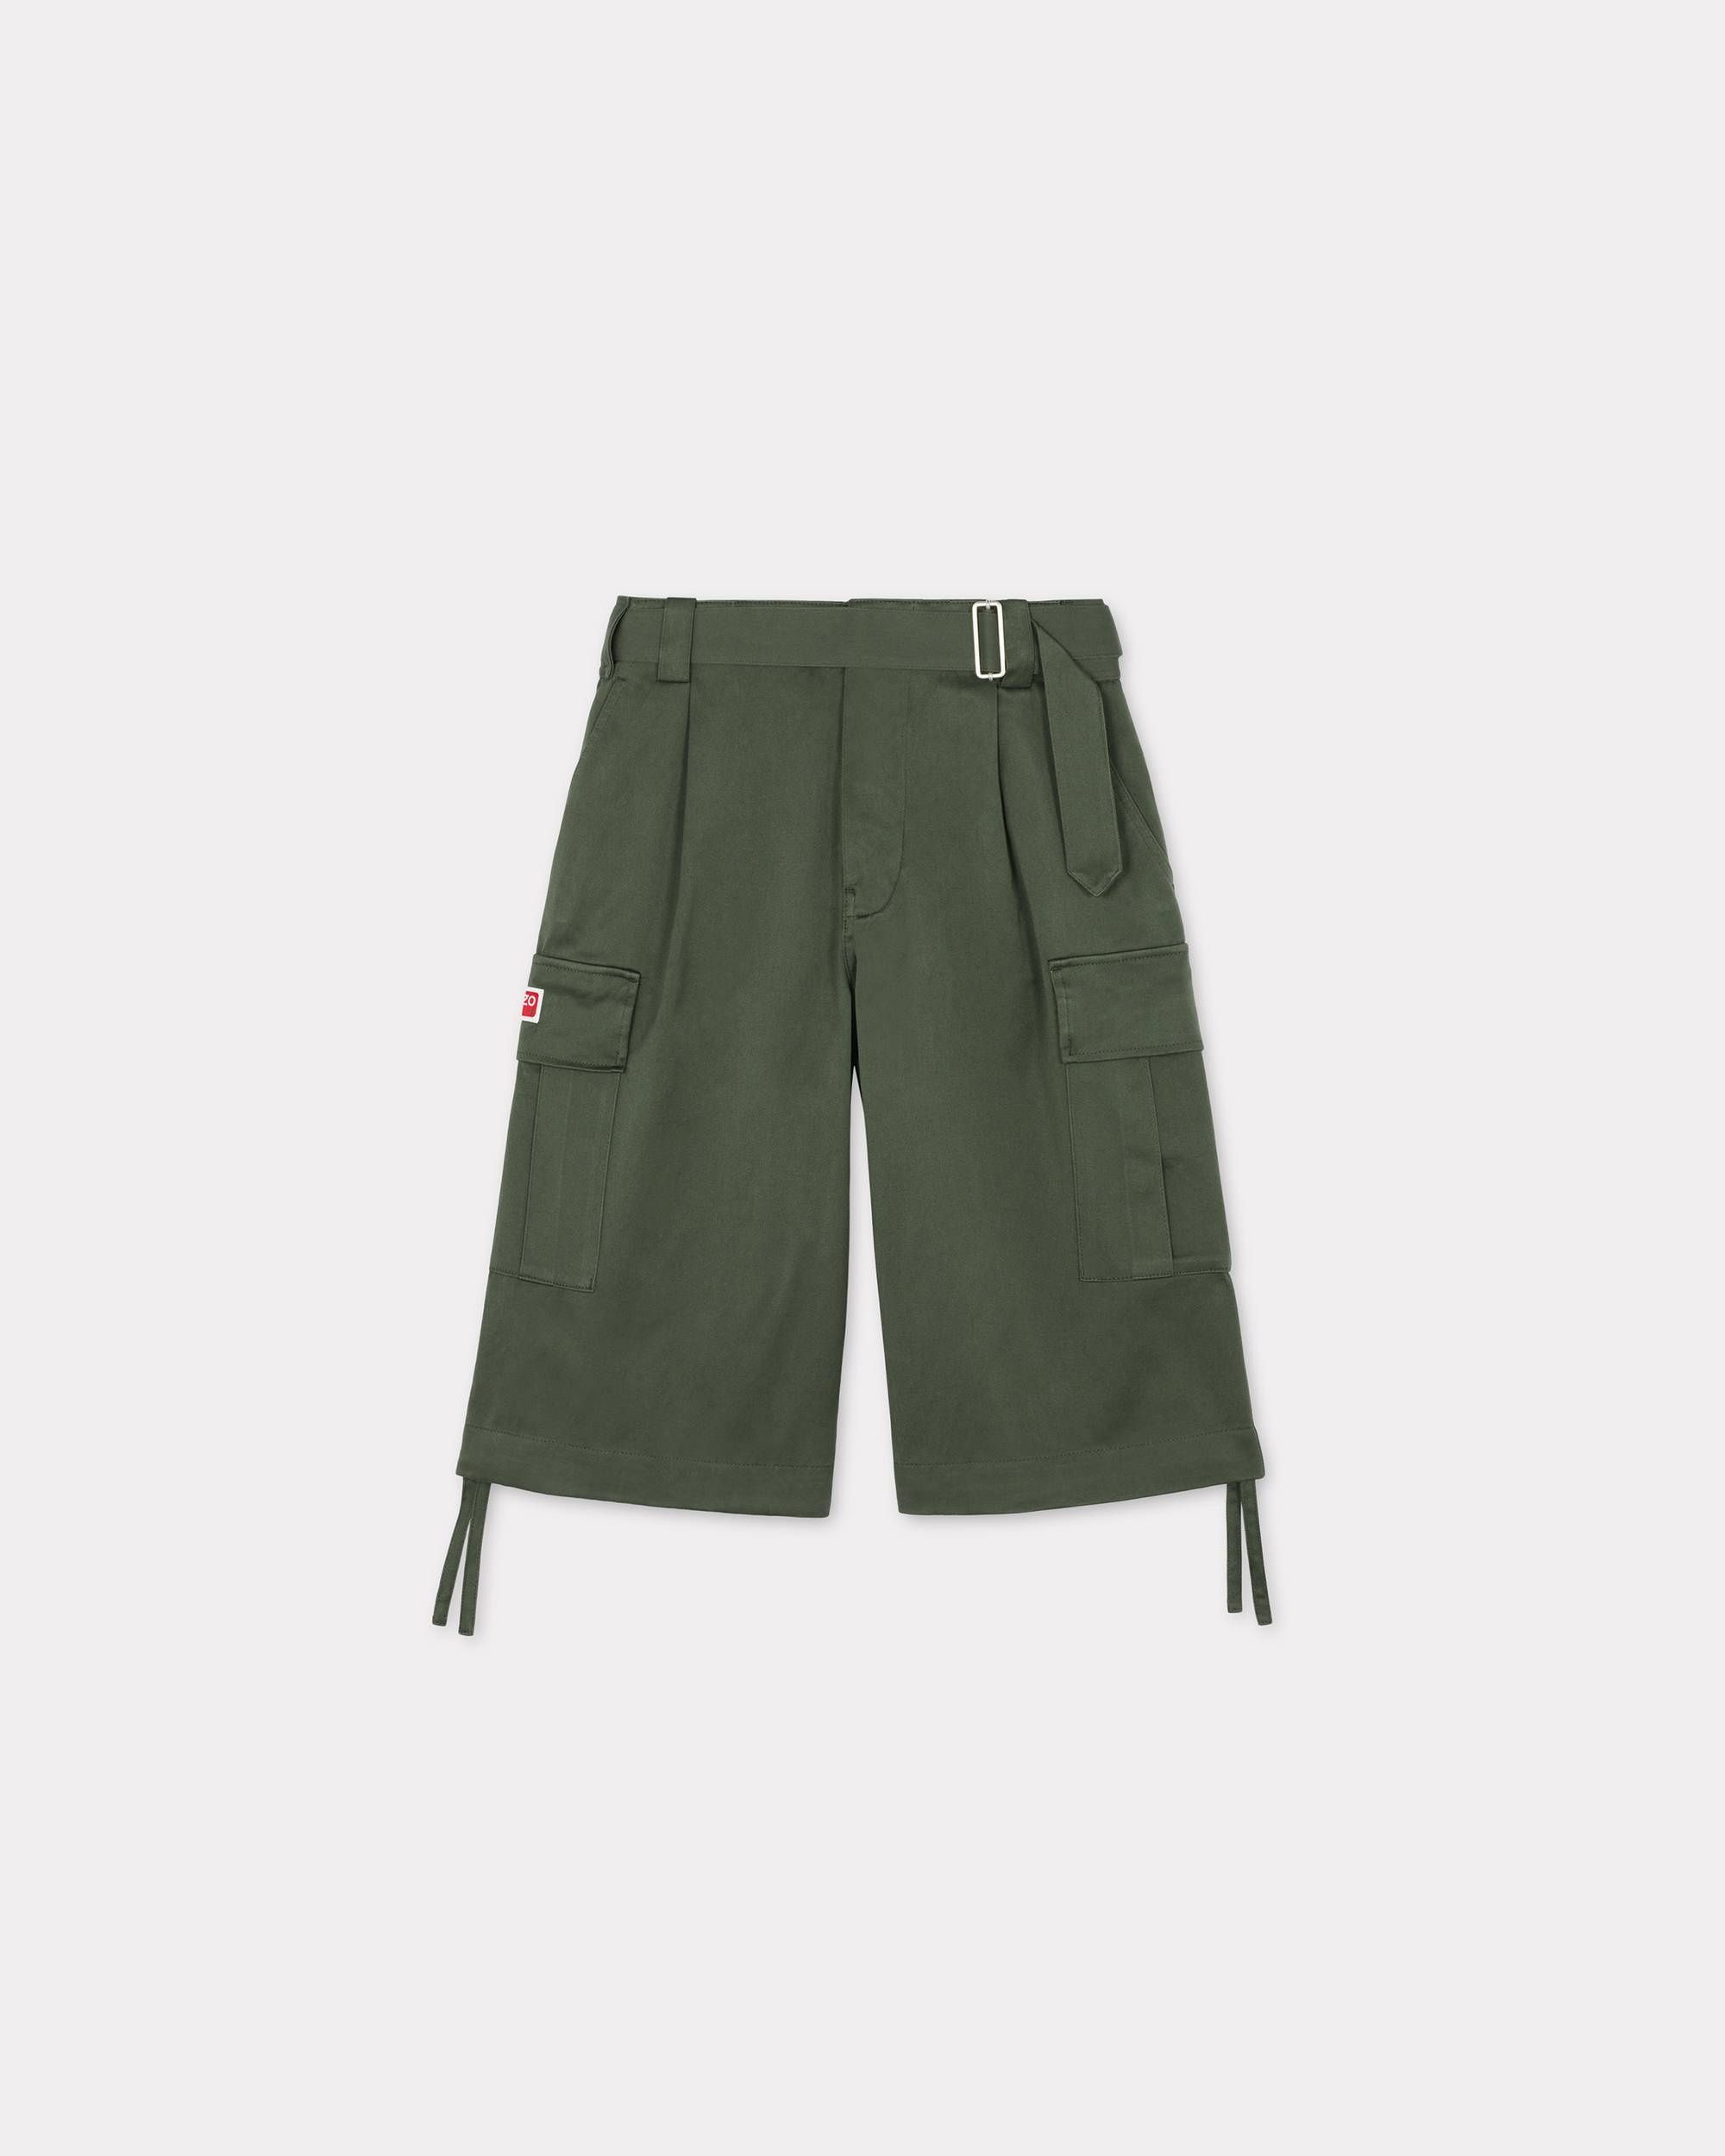 Army cargo shorts - 1